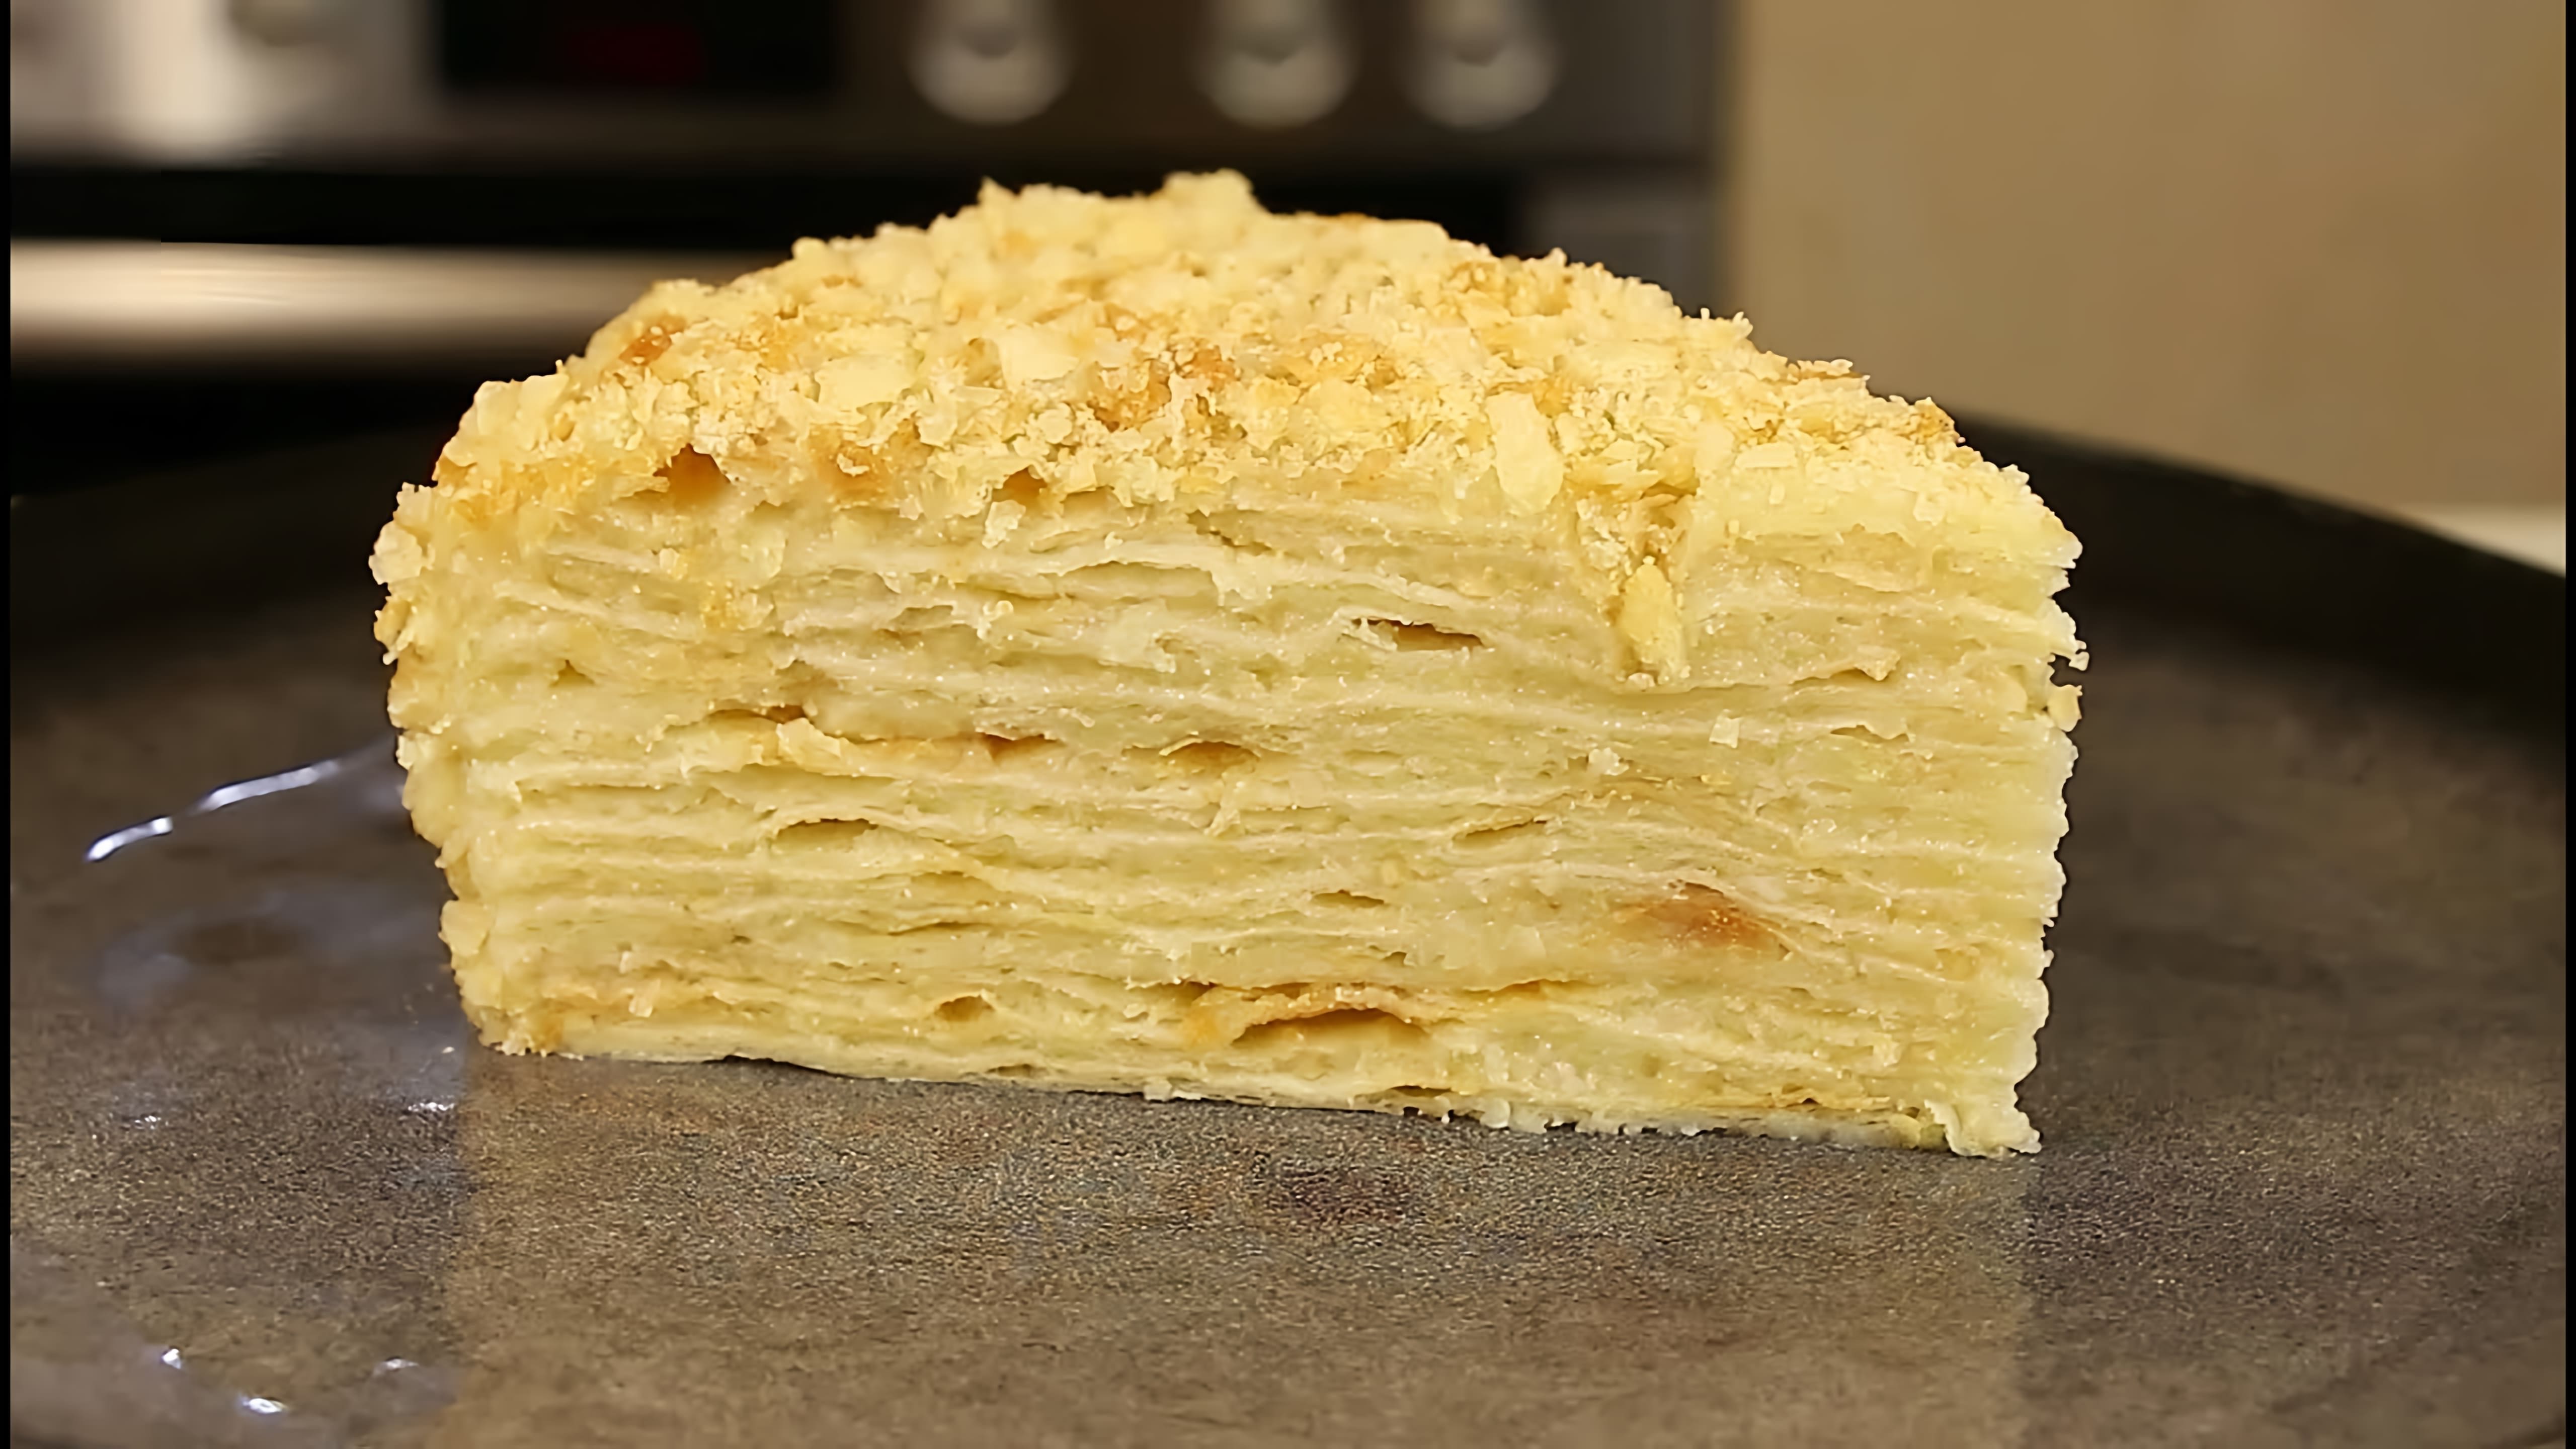 В этом видео демонстрируется рецепт приготовления постного слоеного торта